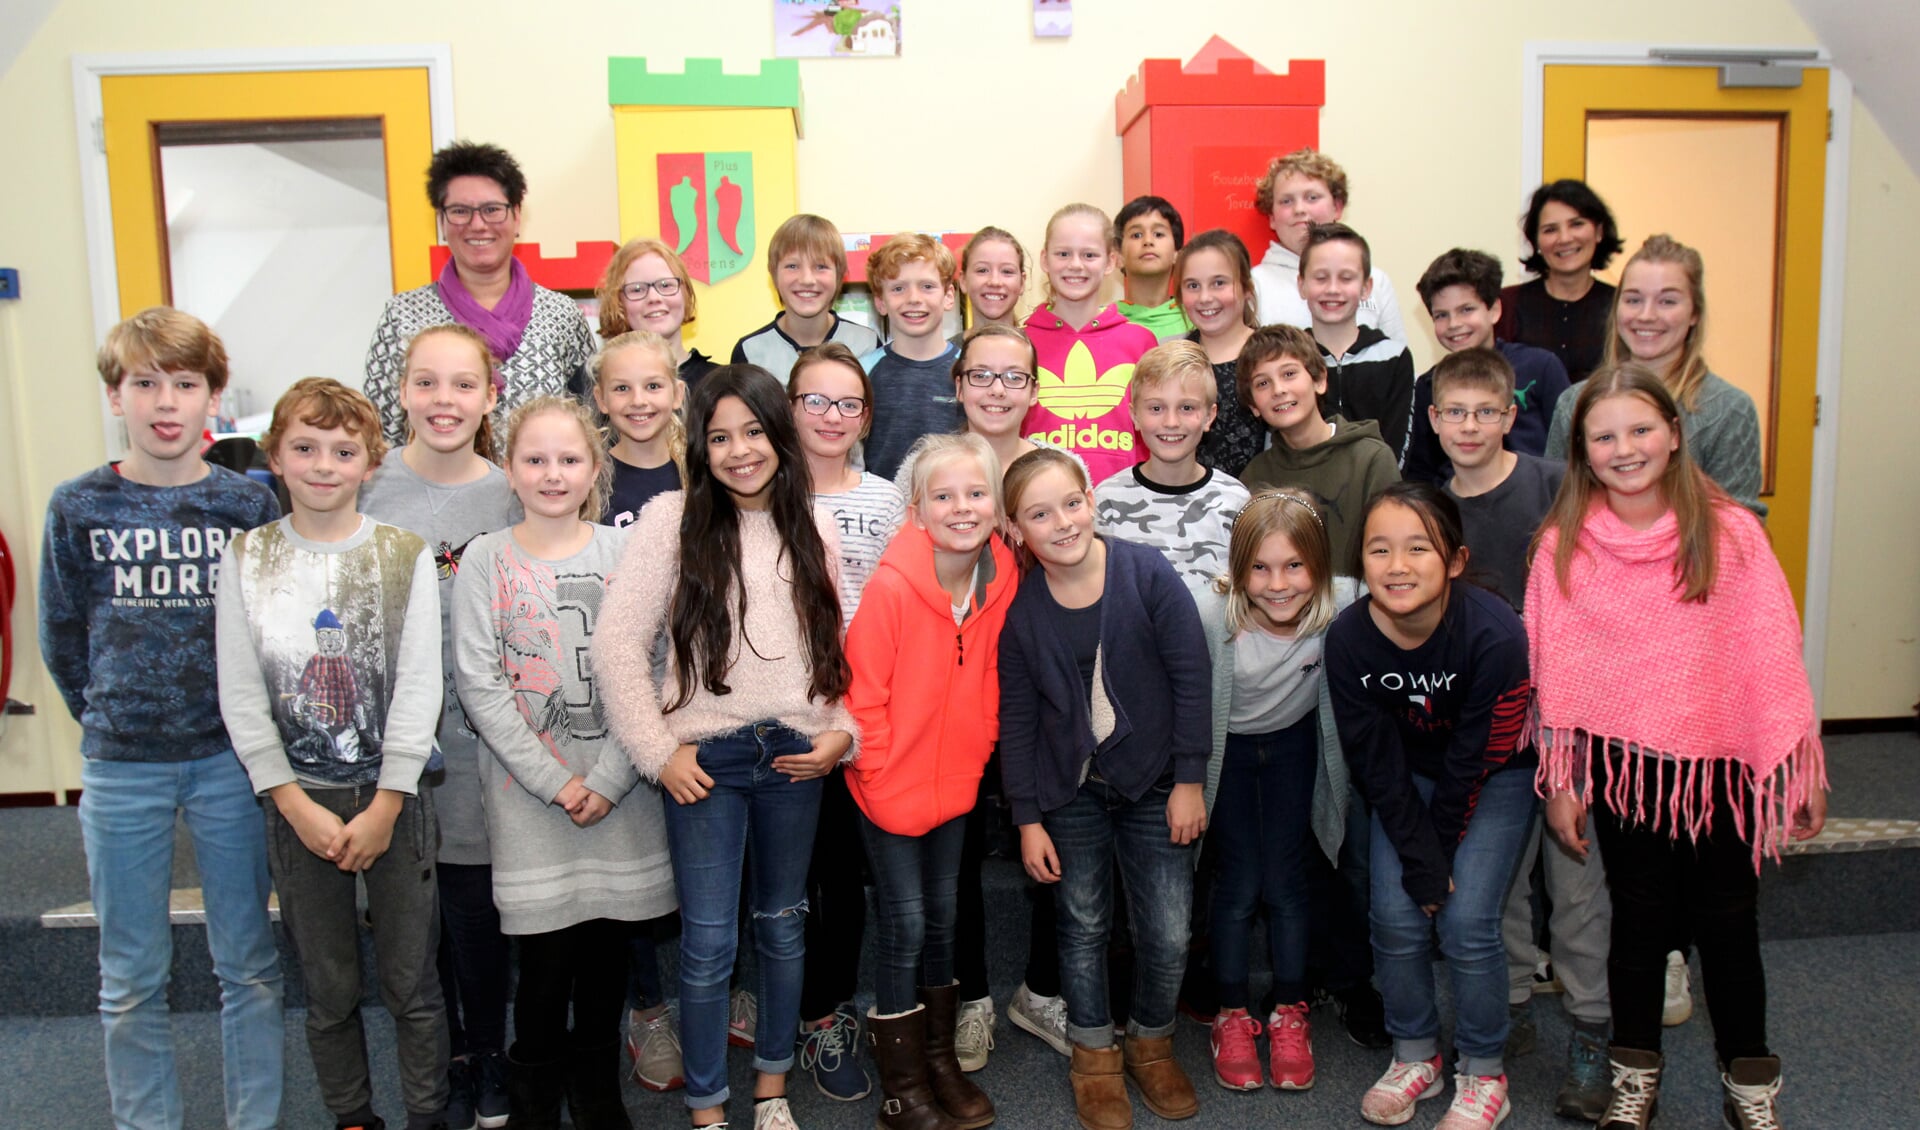 Gitta van Eick (staand rechts achter): ‘Stichting Kind en Voeding is opgericht om ouders en kinderen bewust te maken van het belang van het eten en drinken van natuurlijke voeding’